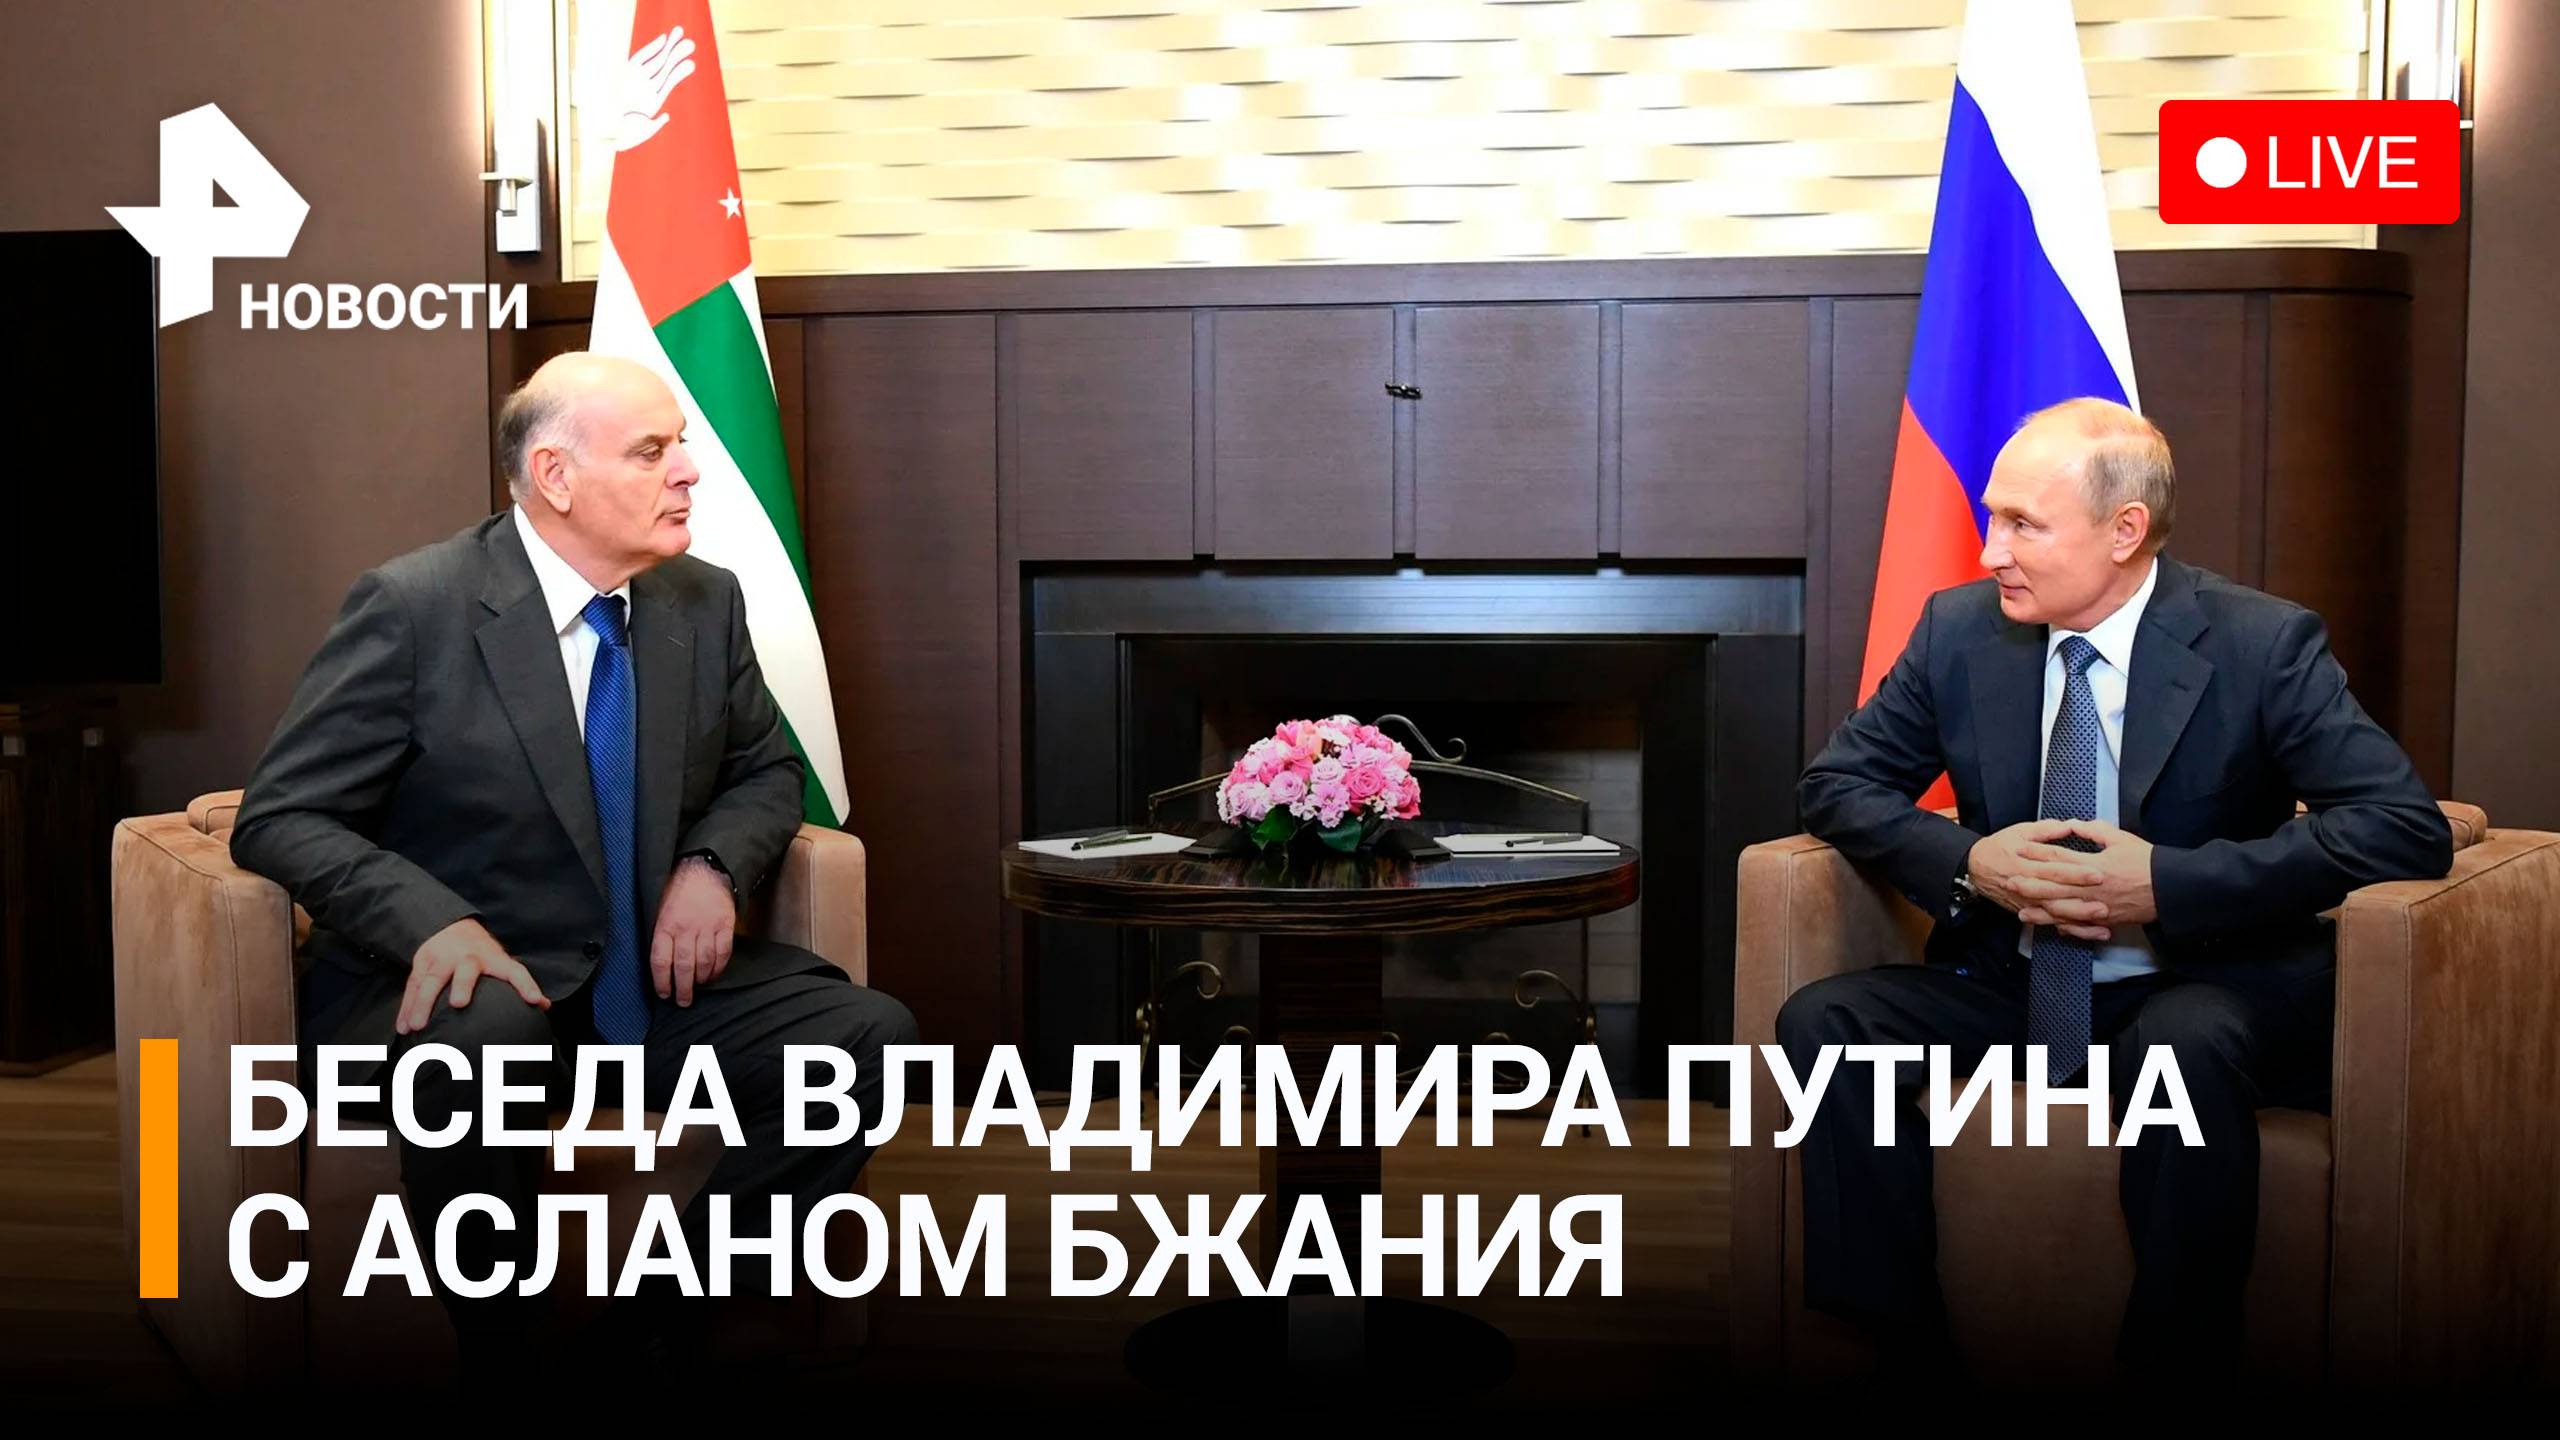 Владимира Путина и президент Абхазии Аслан Бжаания проводят беседу. Прямая трансляция